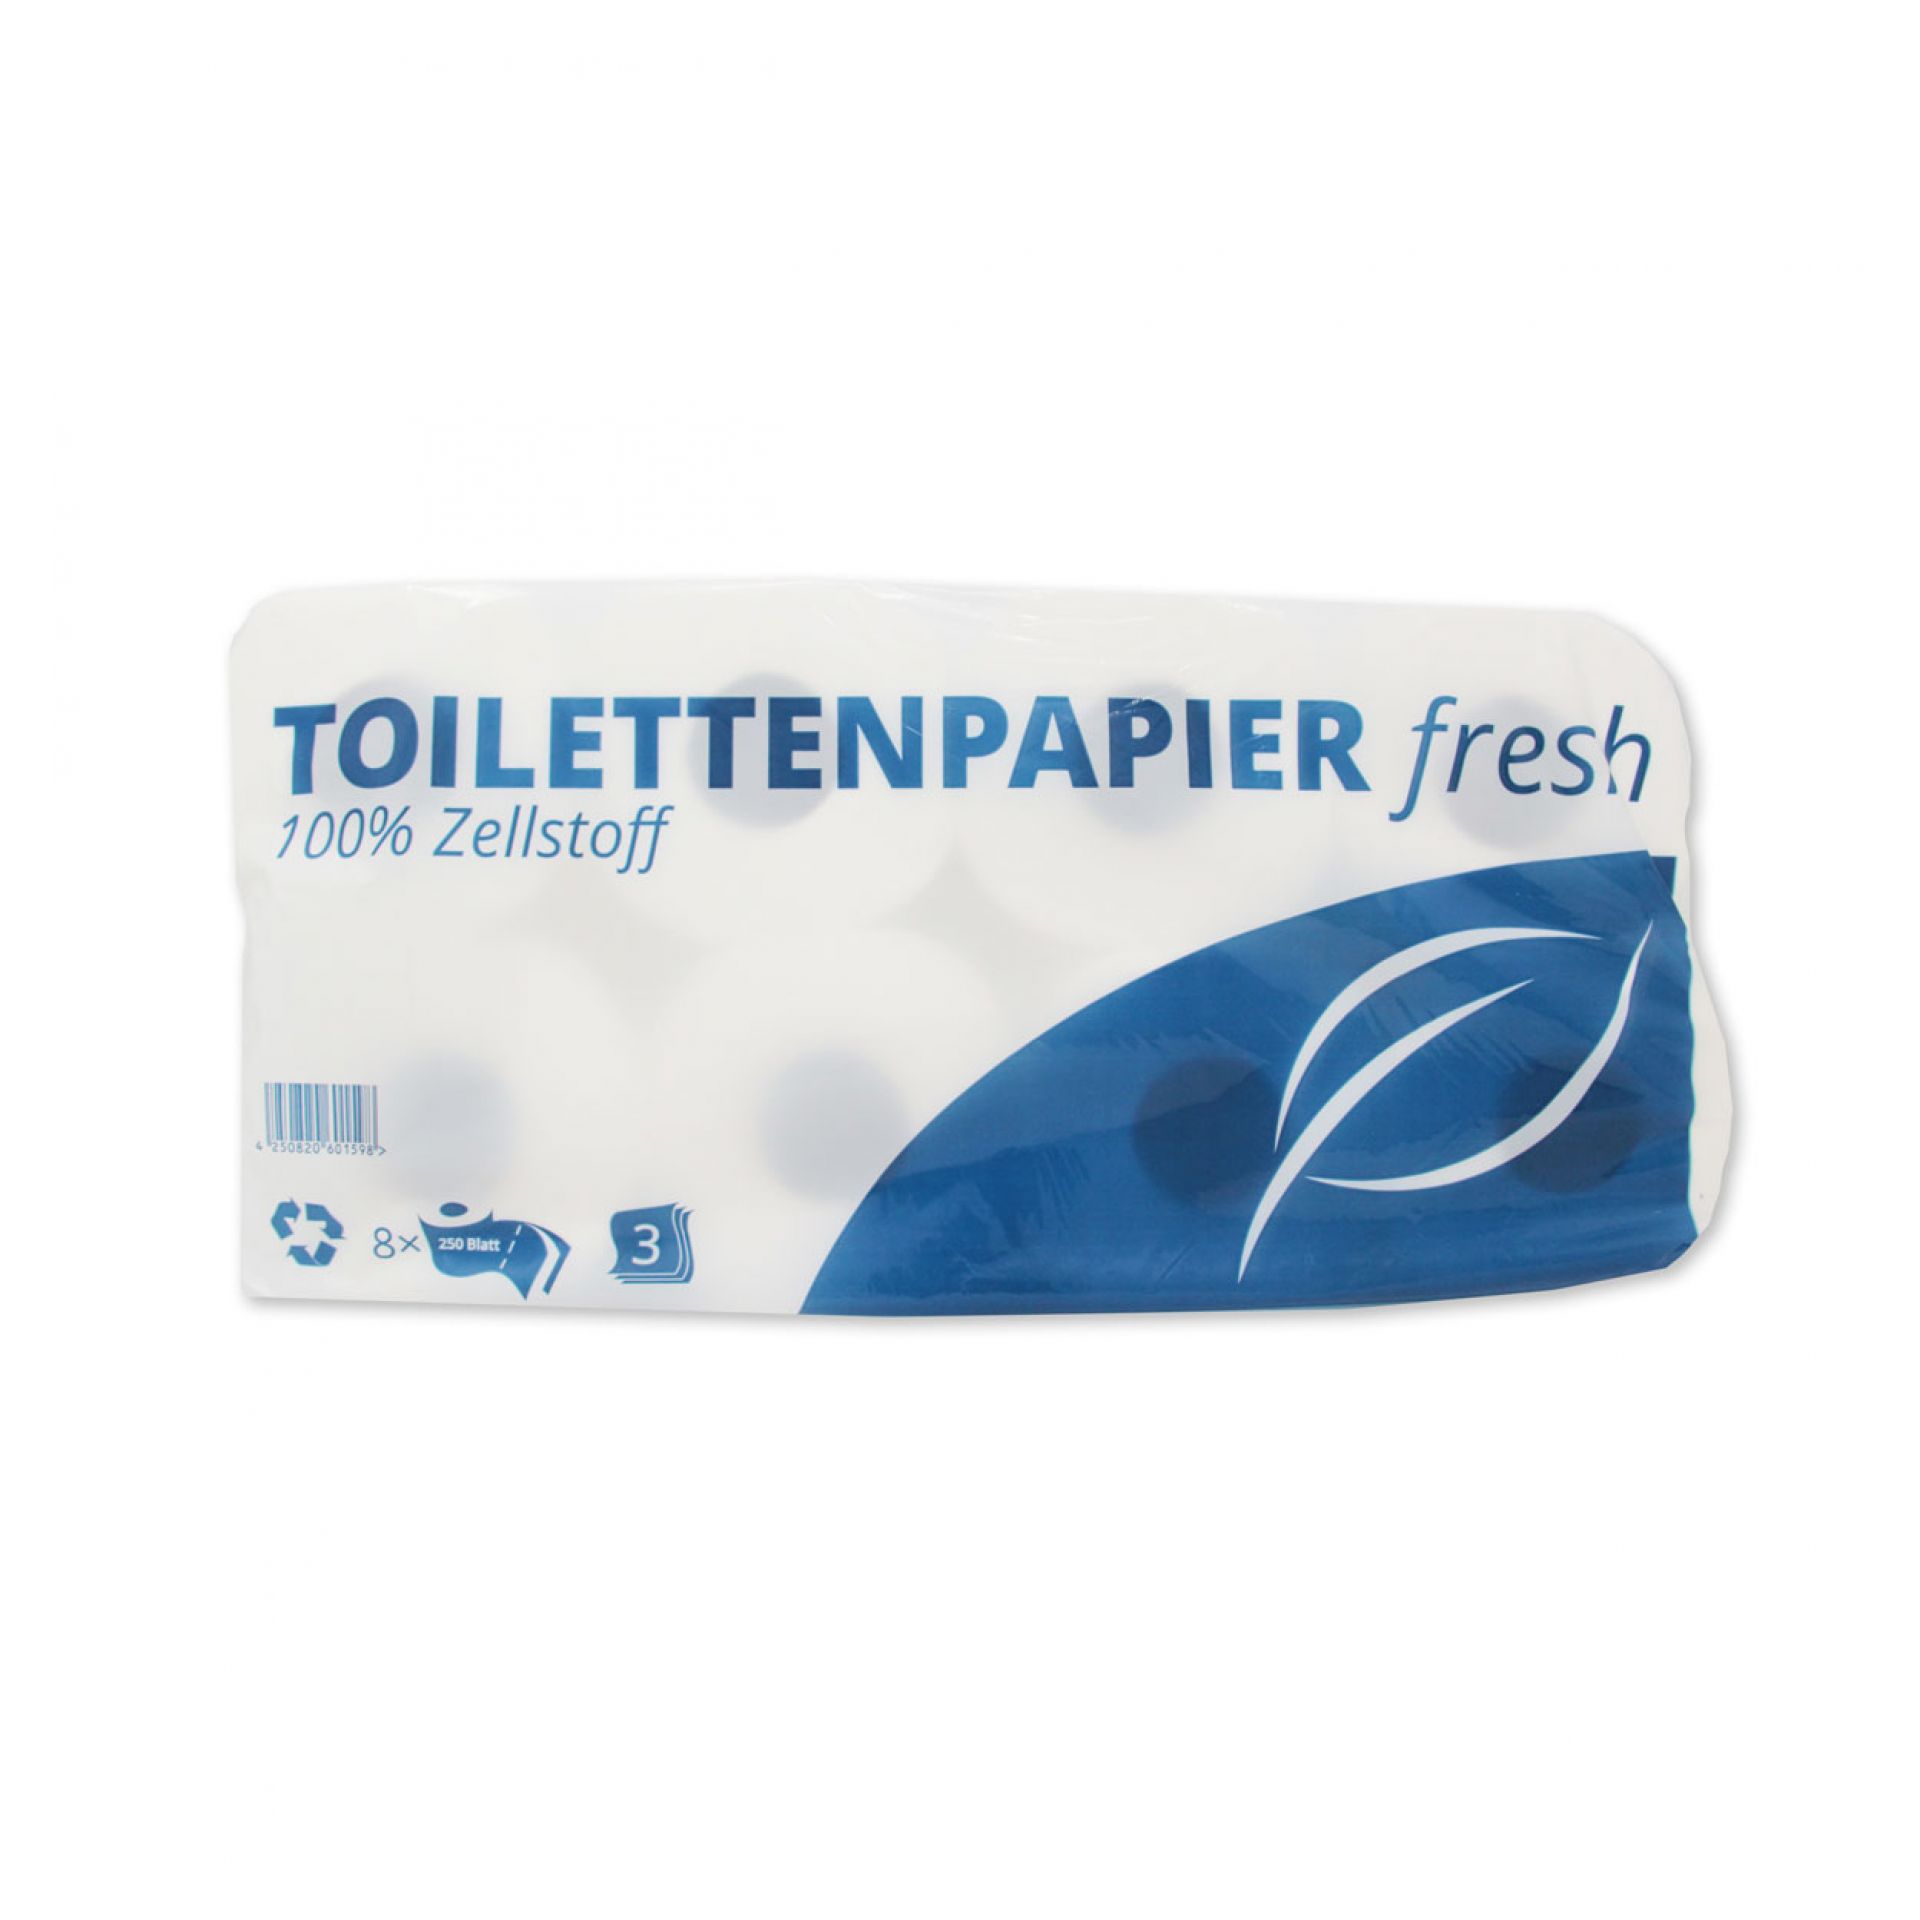 Toilettenpapier 3-lagig - Packung à 8 Rollen